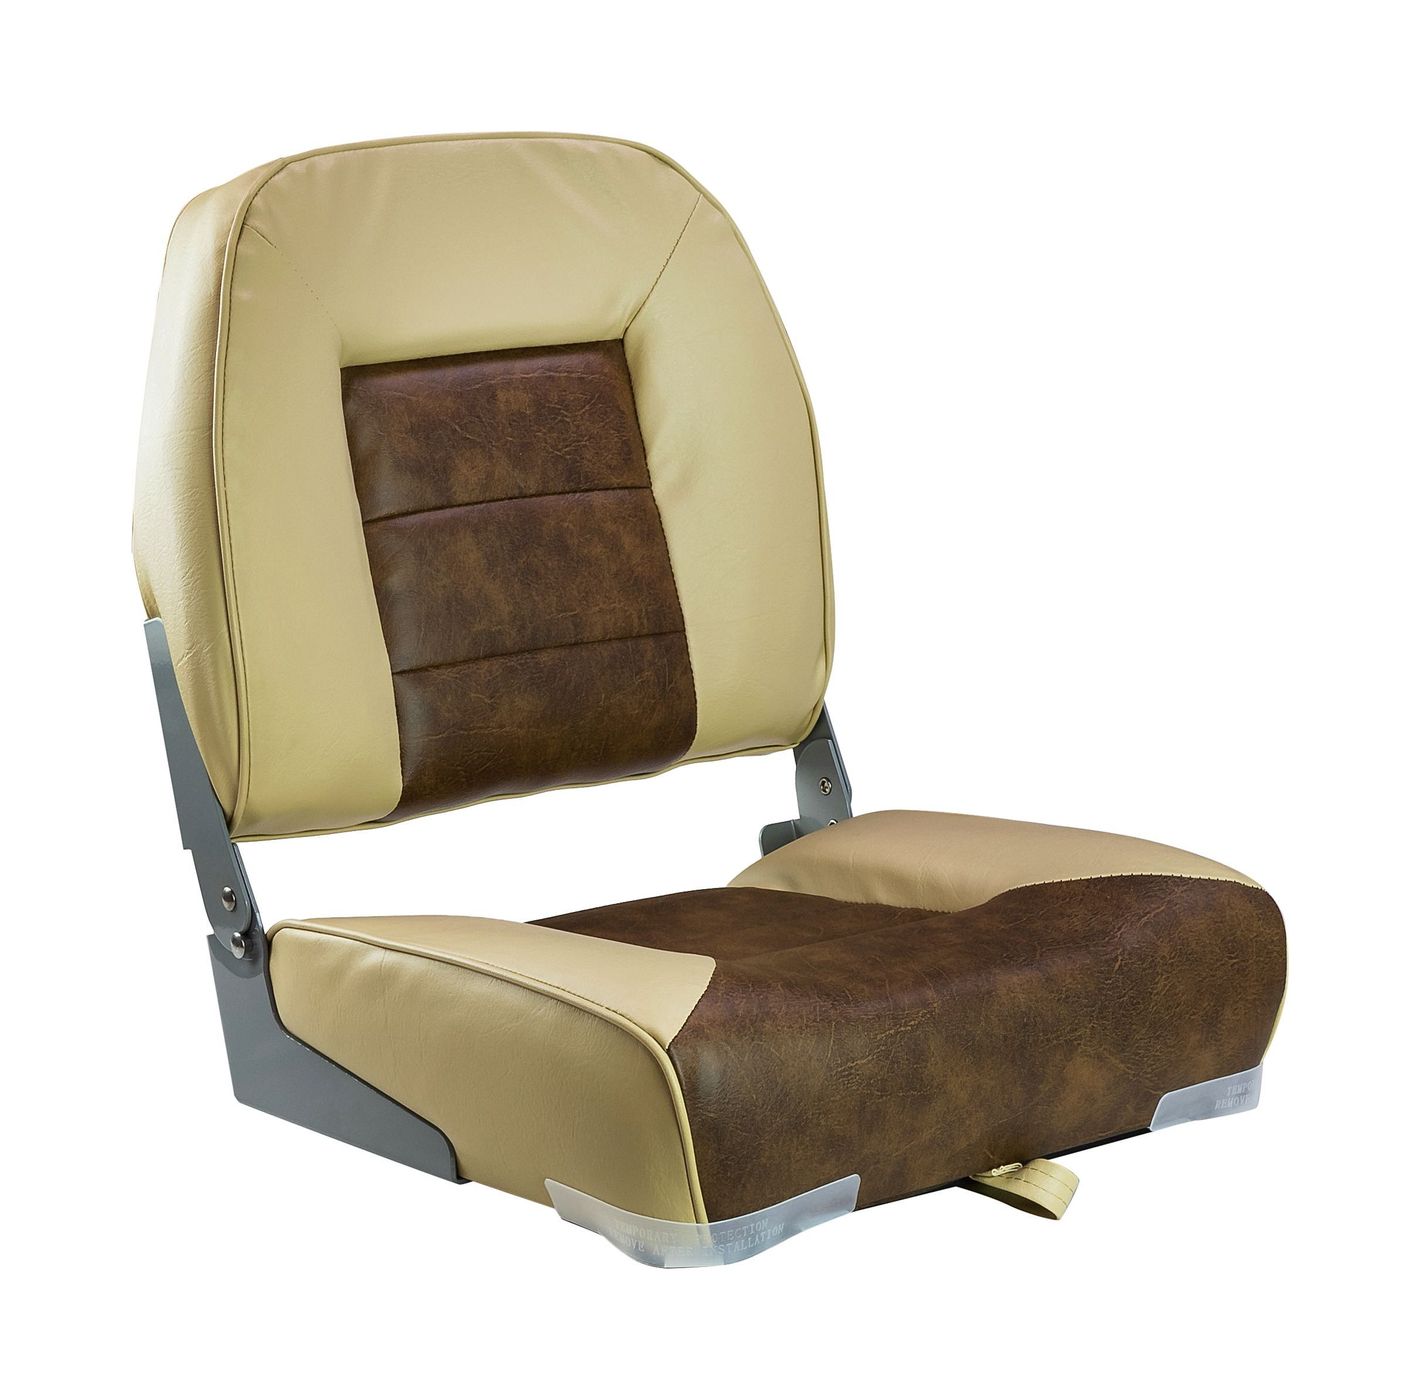 Кресло складное мягкое, обивка винил, цвет песочный/коричневый, Marine Rocket 75121SB-MR кровать вероника плюс 200 × 180 cм каркас коричневый